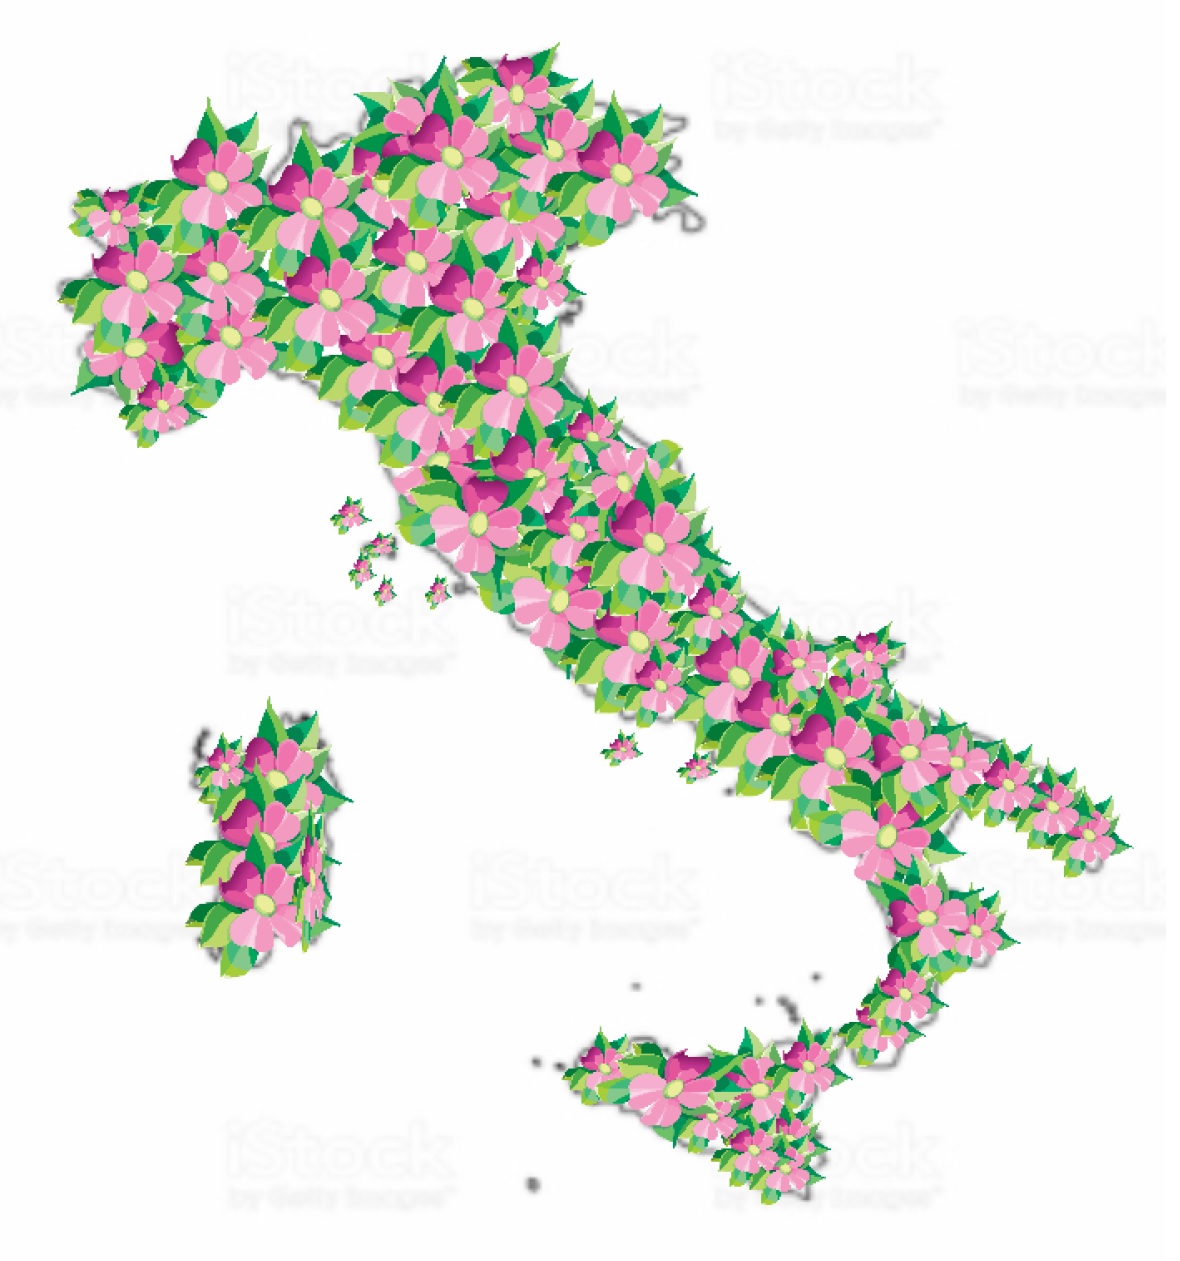 Italia-Rosadigitale-4